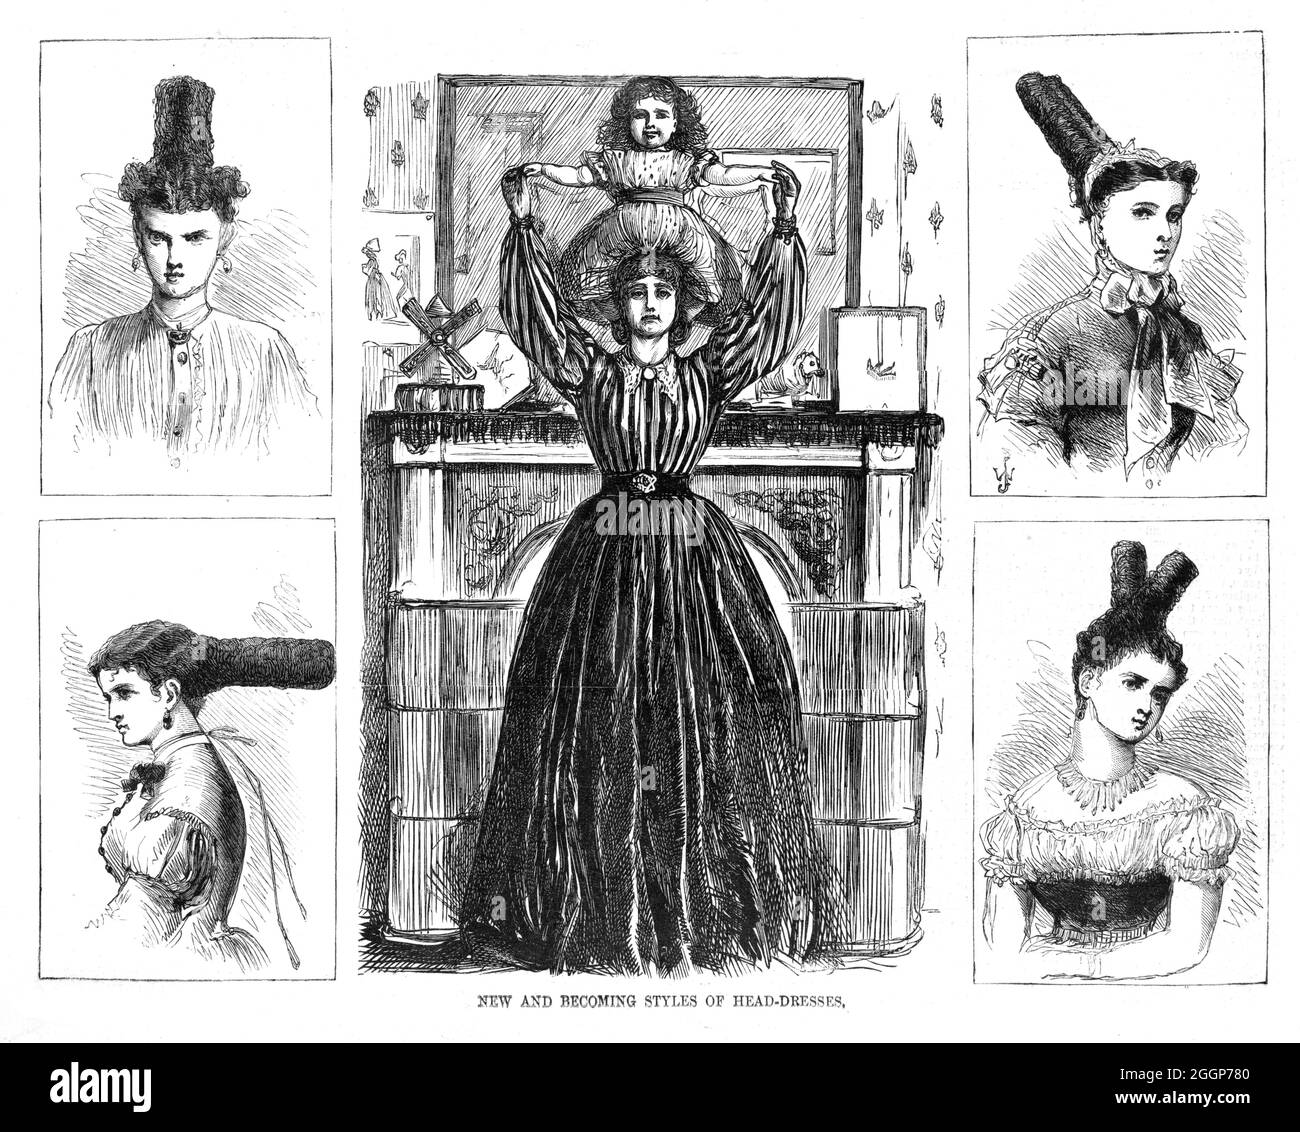 New and Becoming Styles of Headdresses, satirischer Cartoon von Thomas Nast (1840-1902). In der Mitte hält eine Frau ein Kind auf dem Kopf, umgeben von vier Vignetten-Ansichten „neuer“ Frisuren. Harper's Weekly, 1867. Stockfoto